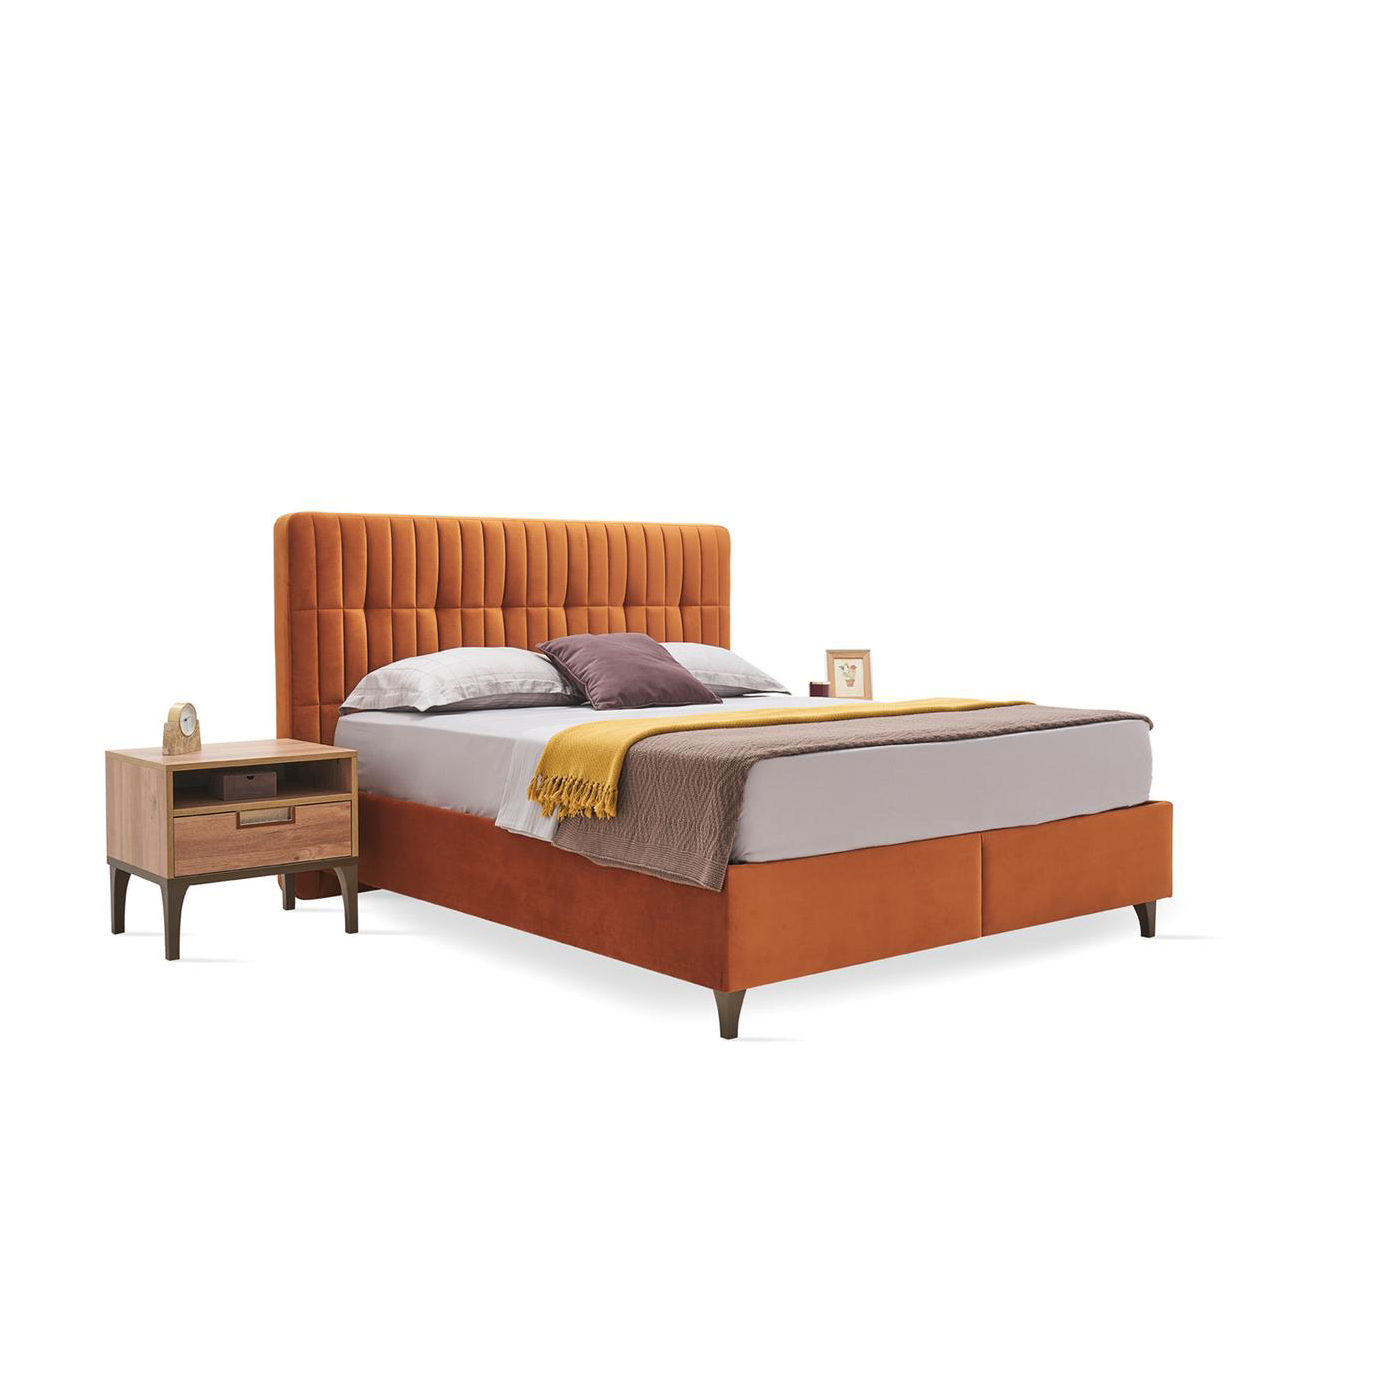 Кровать Enza Home Sona, двуспальная, с подъемным механизмом, 200х200 см